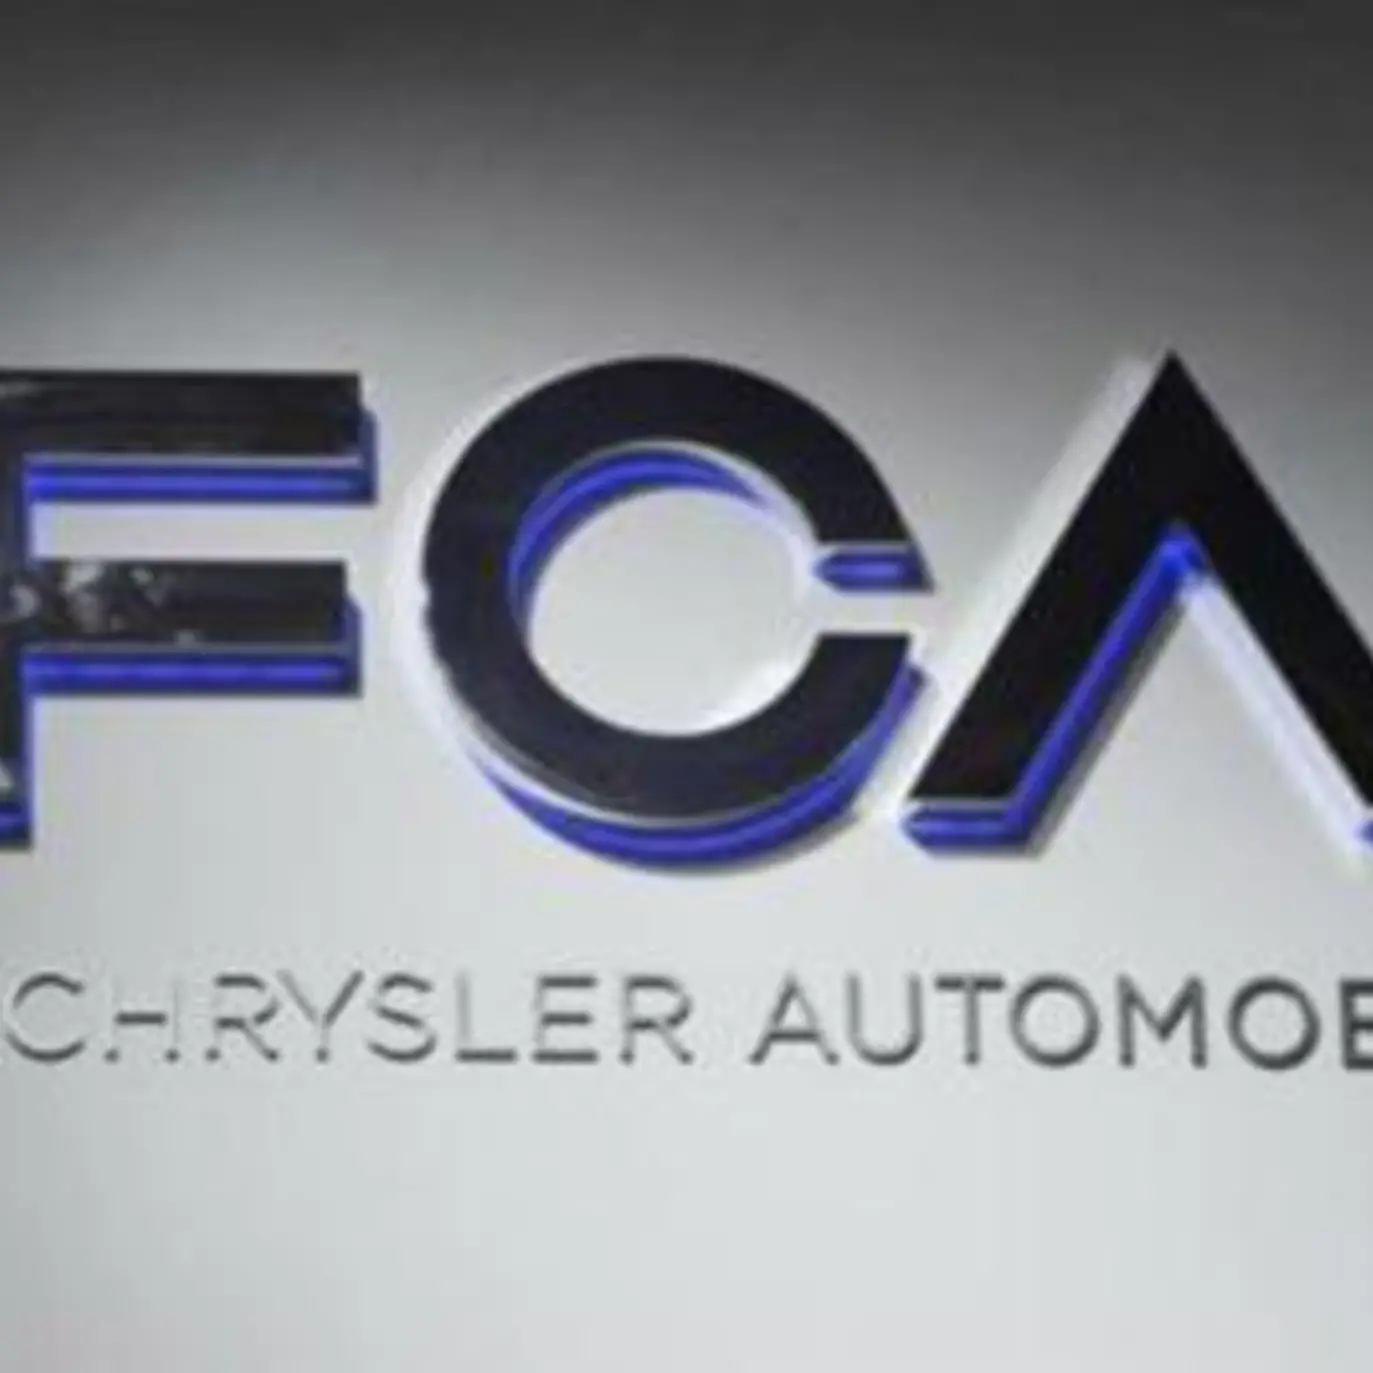 Ora è ufficiale, Fca vuole la fusione con Renault